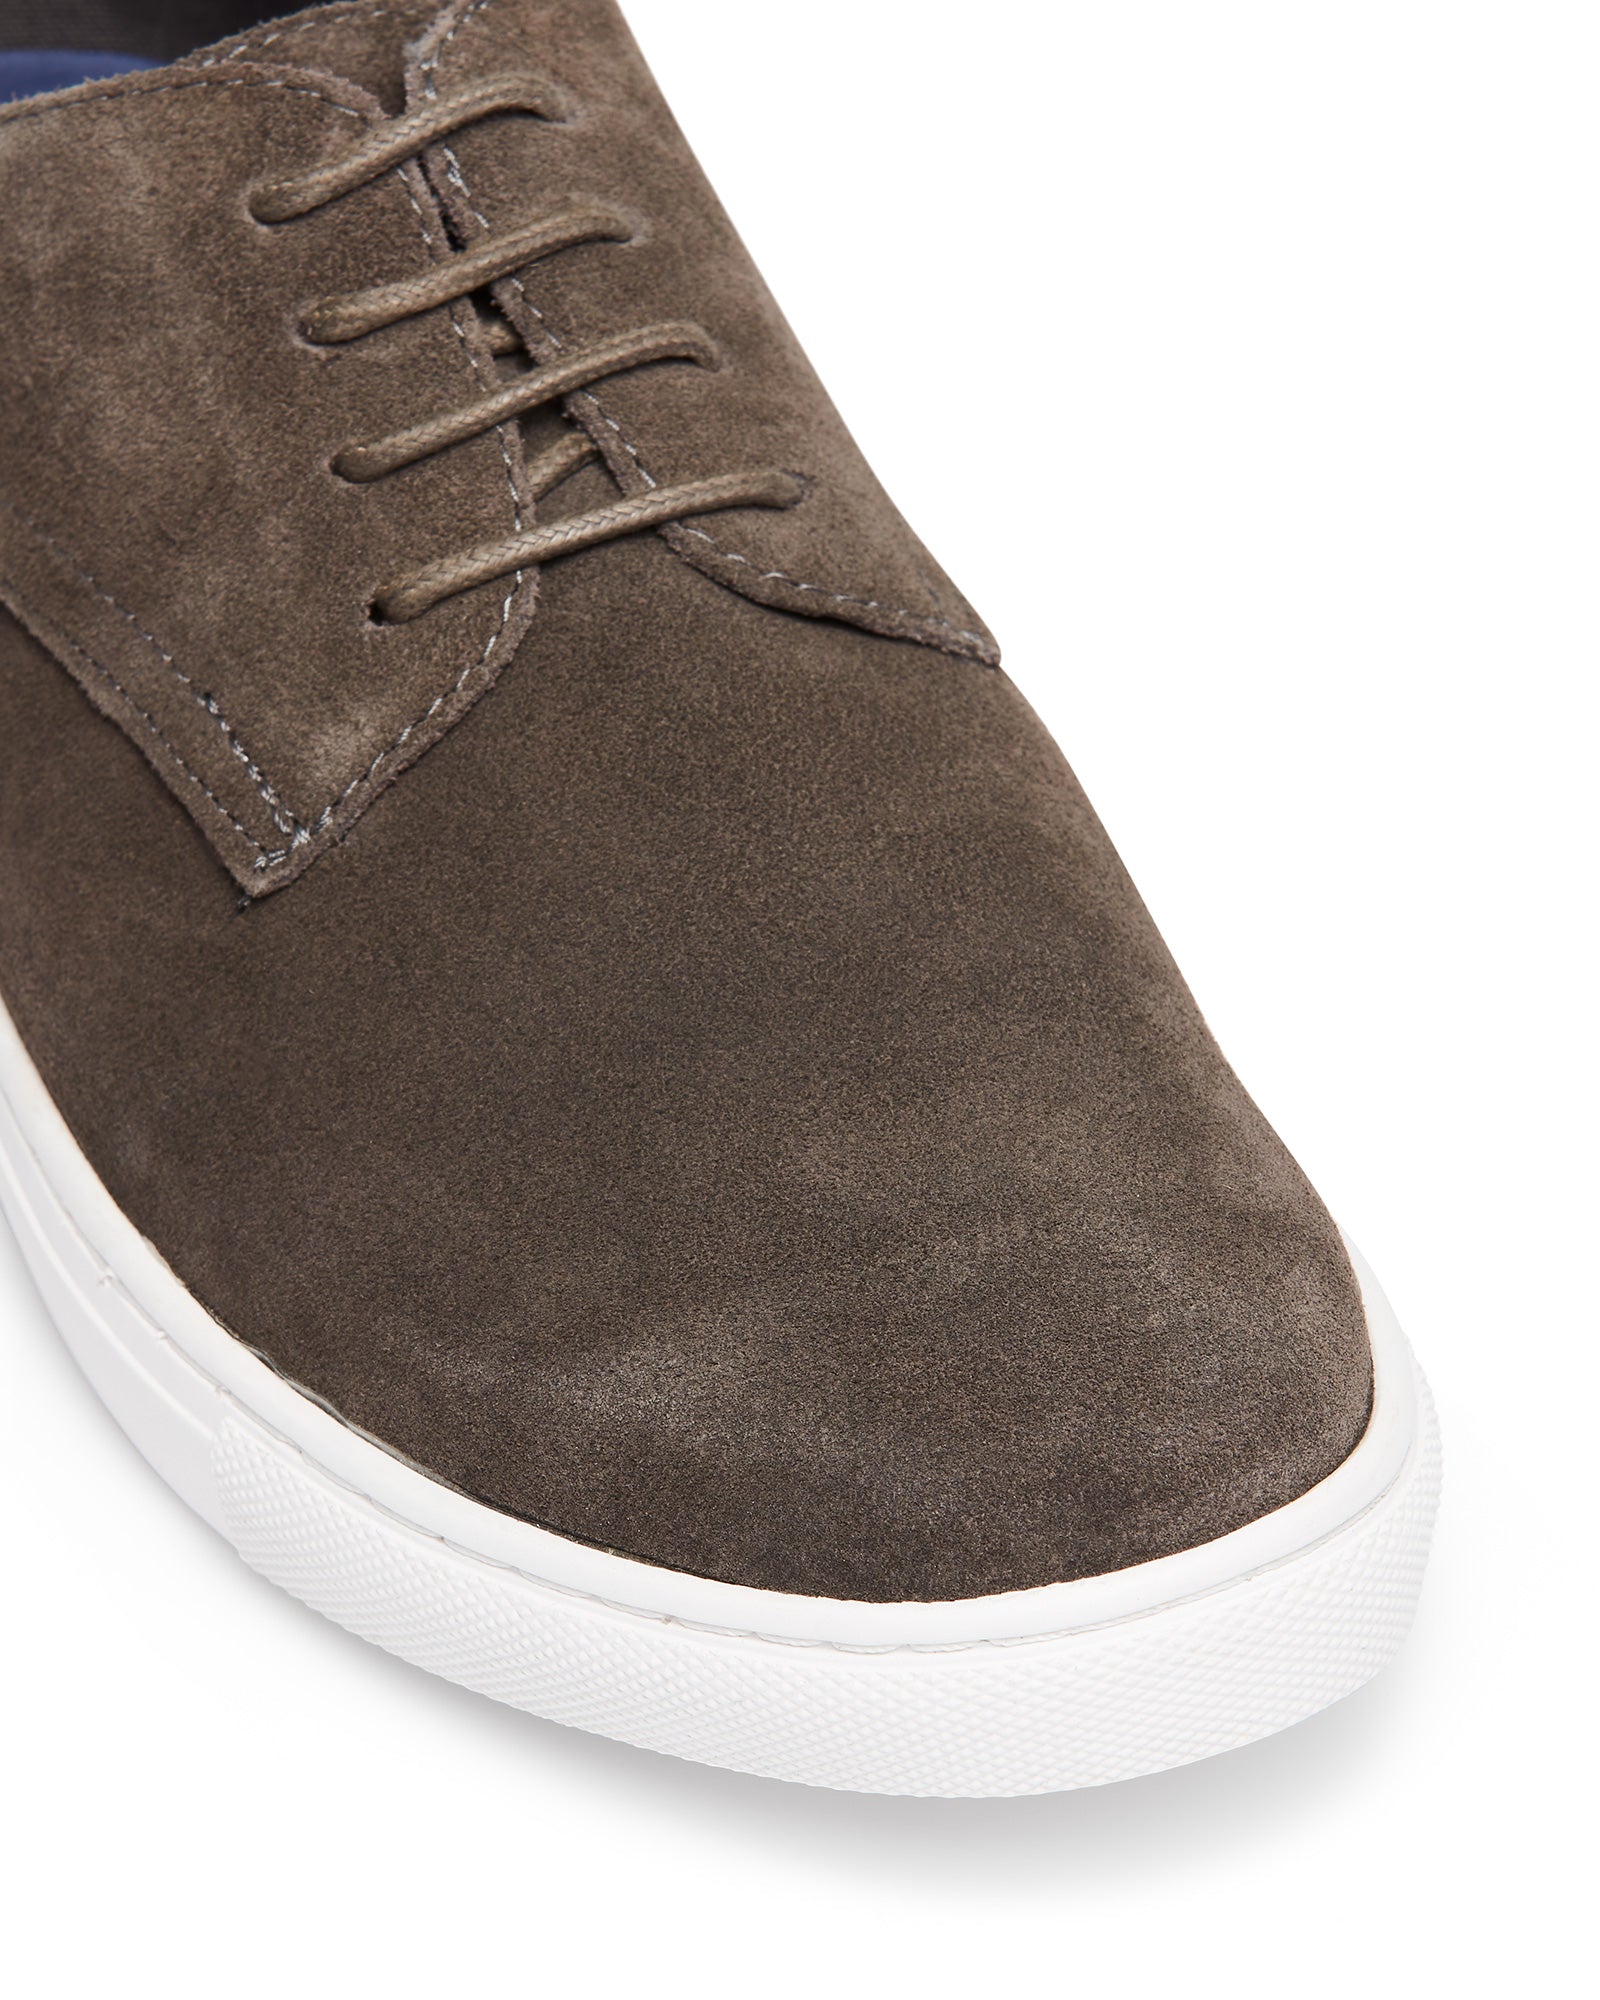 Uncut Shoes Riptide Grey | Men's Sneaker | Low Top | Lace Up | Leather